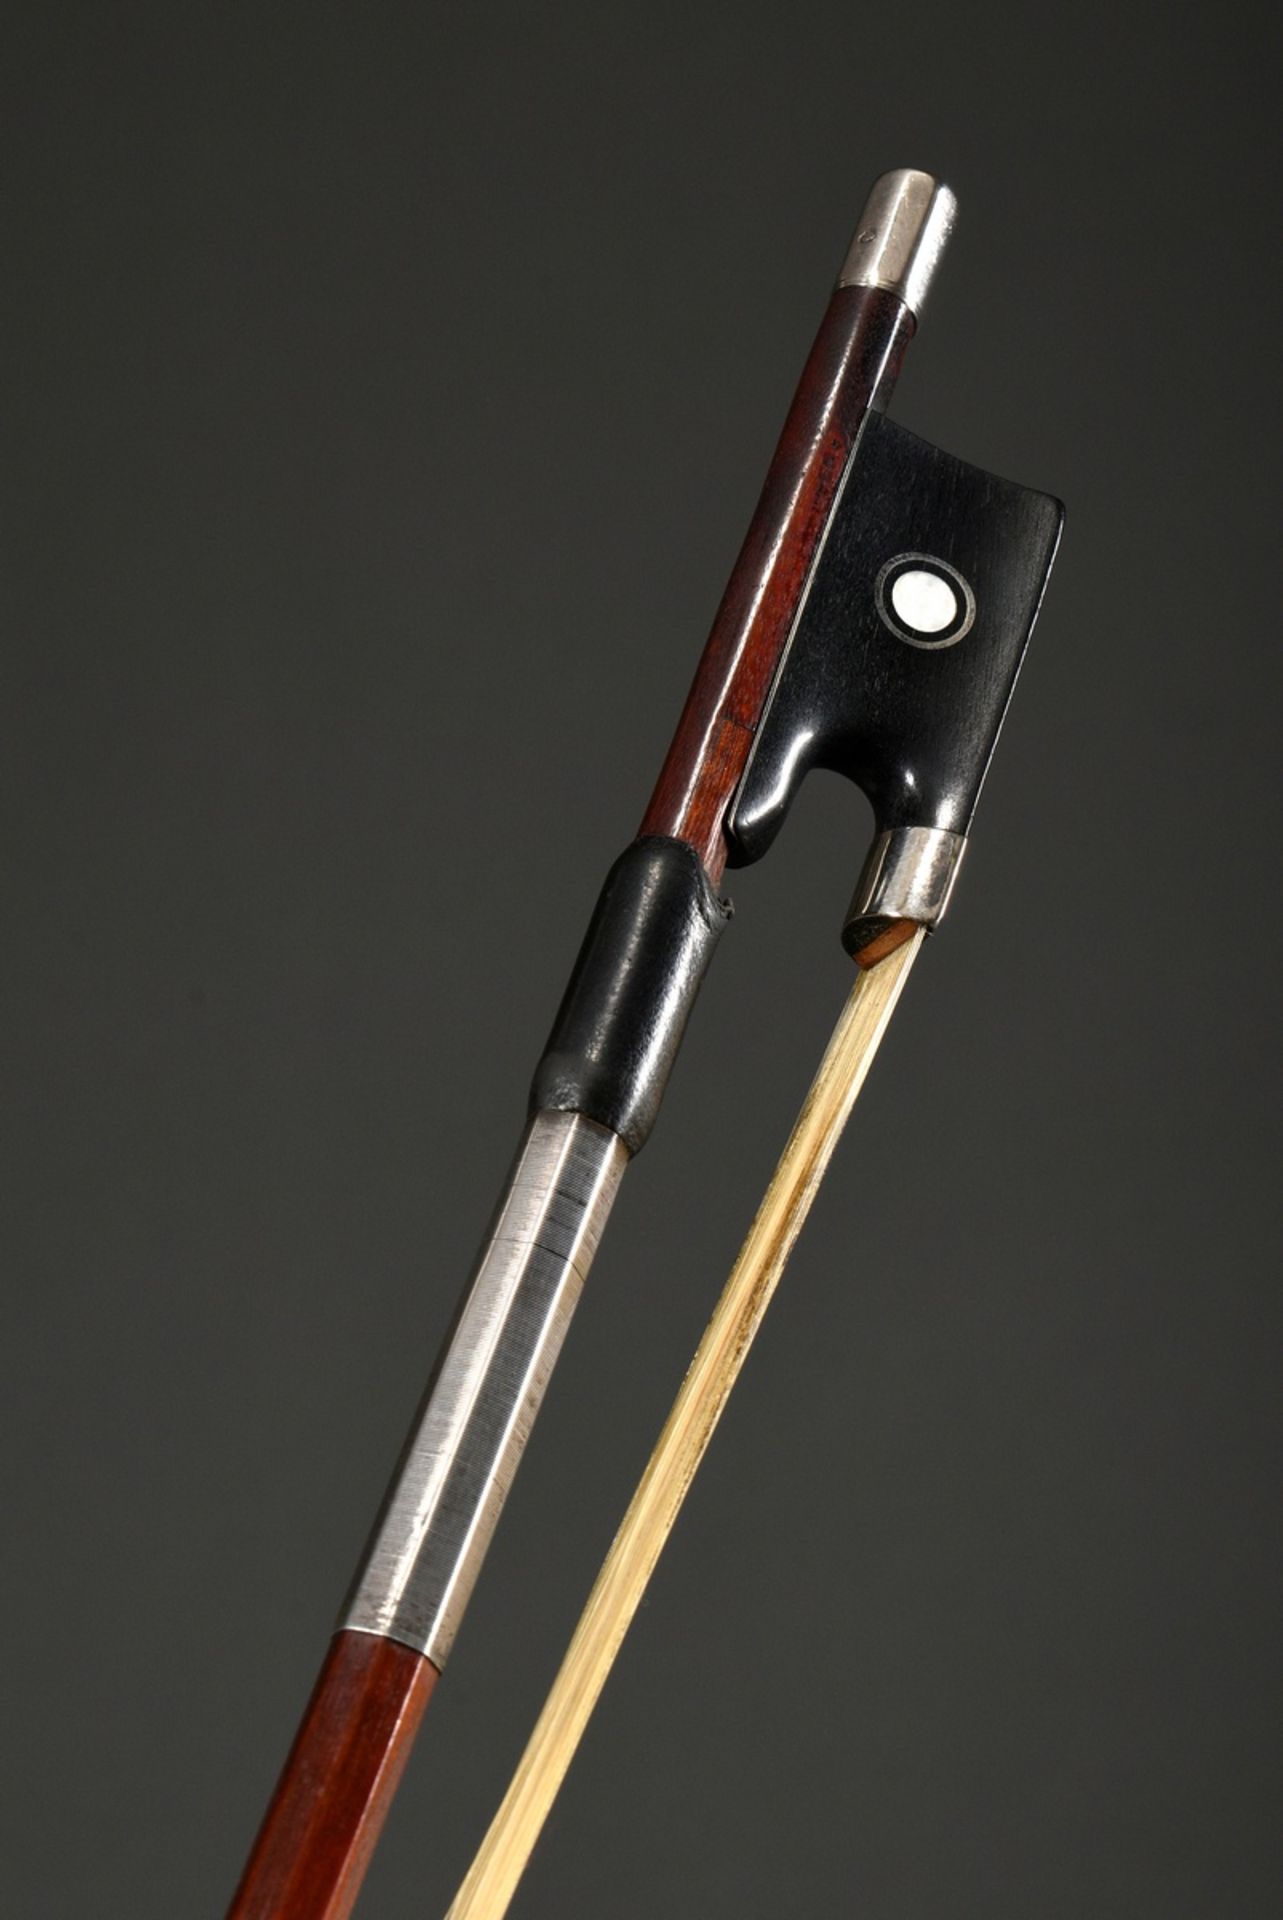 Master violin bow, Saxony 20th century, probably Pfretzschner, octagonal pernambuco stick, silver m